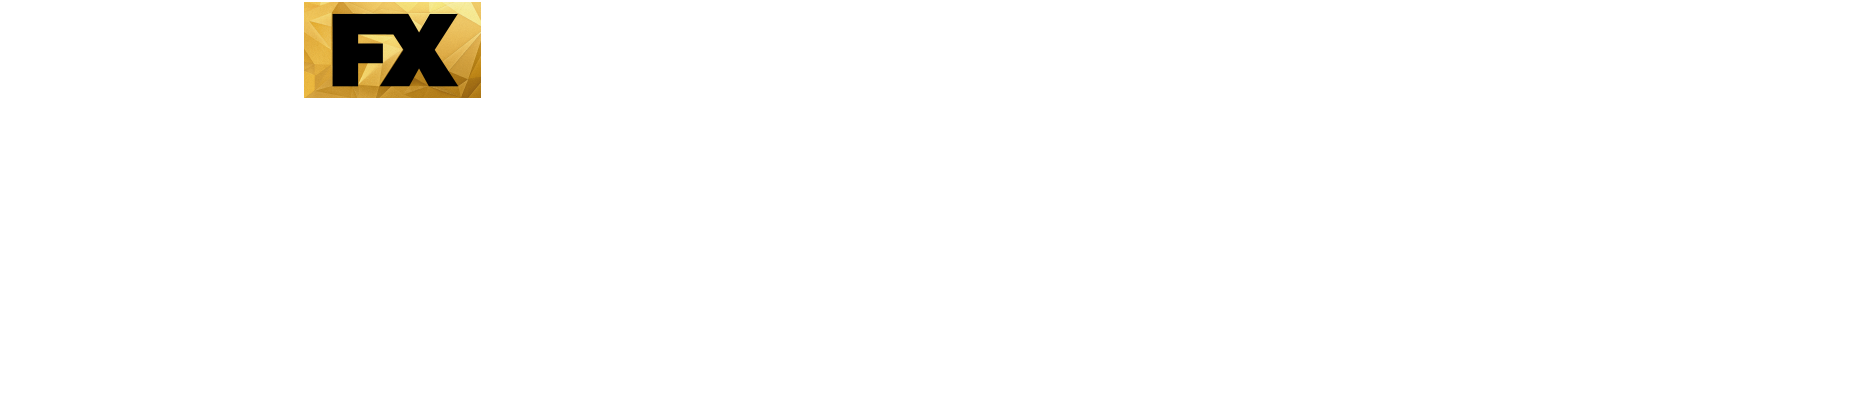 Pose Show Logo